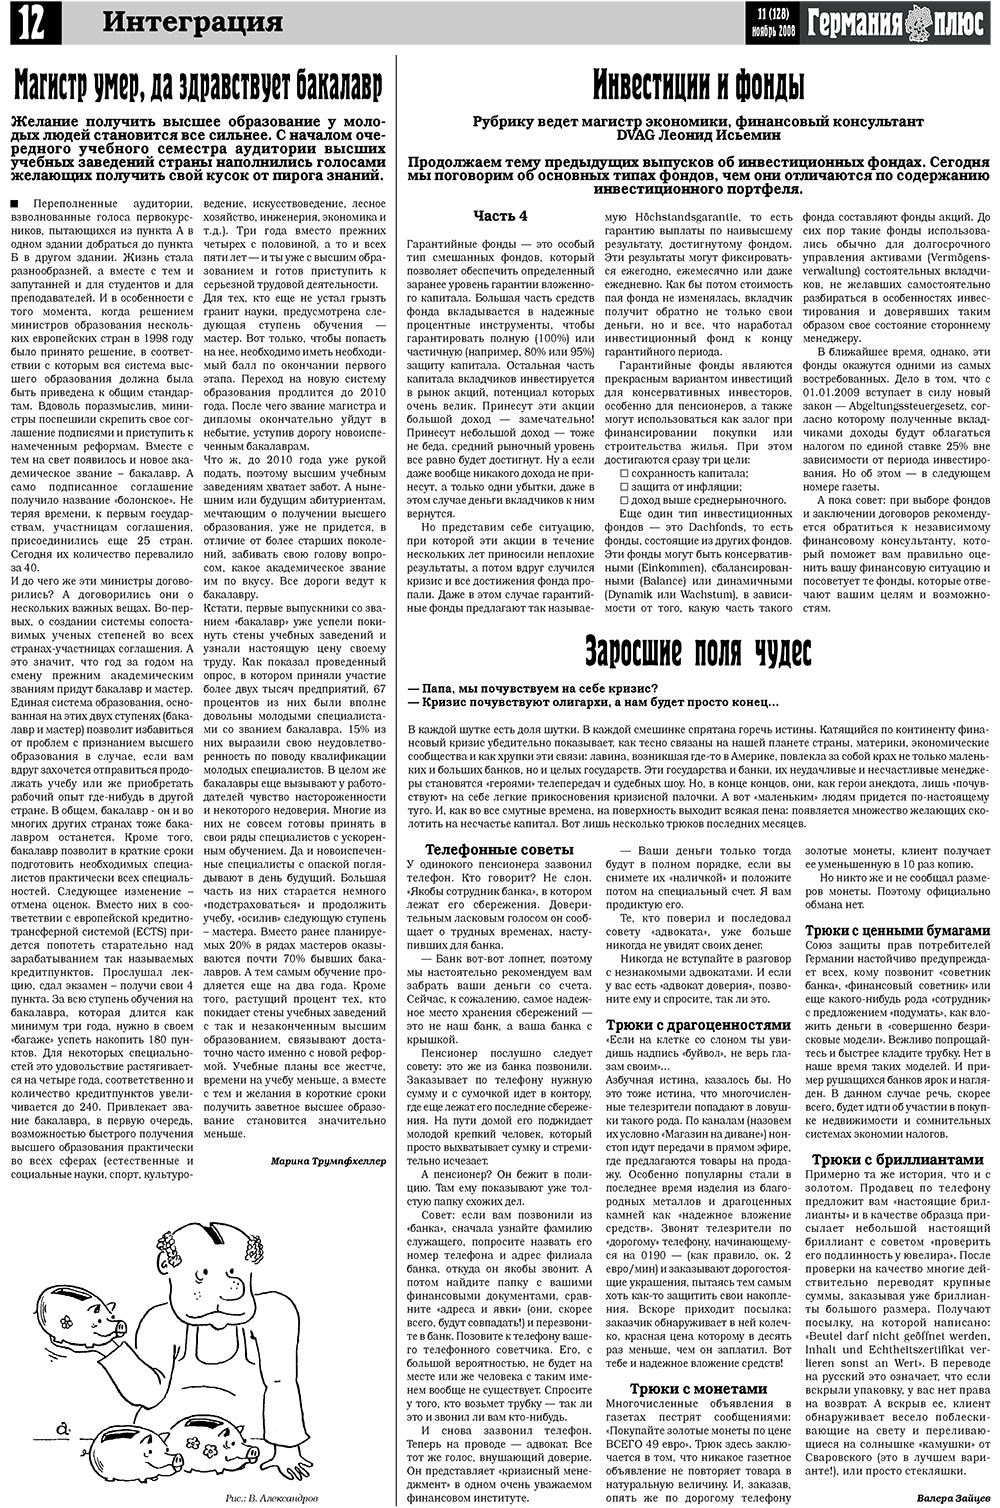 Германия плюс (газета). 2008 год, номер 11, стр. 14